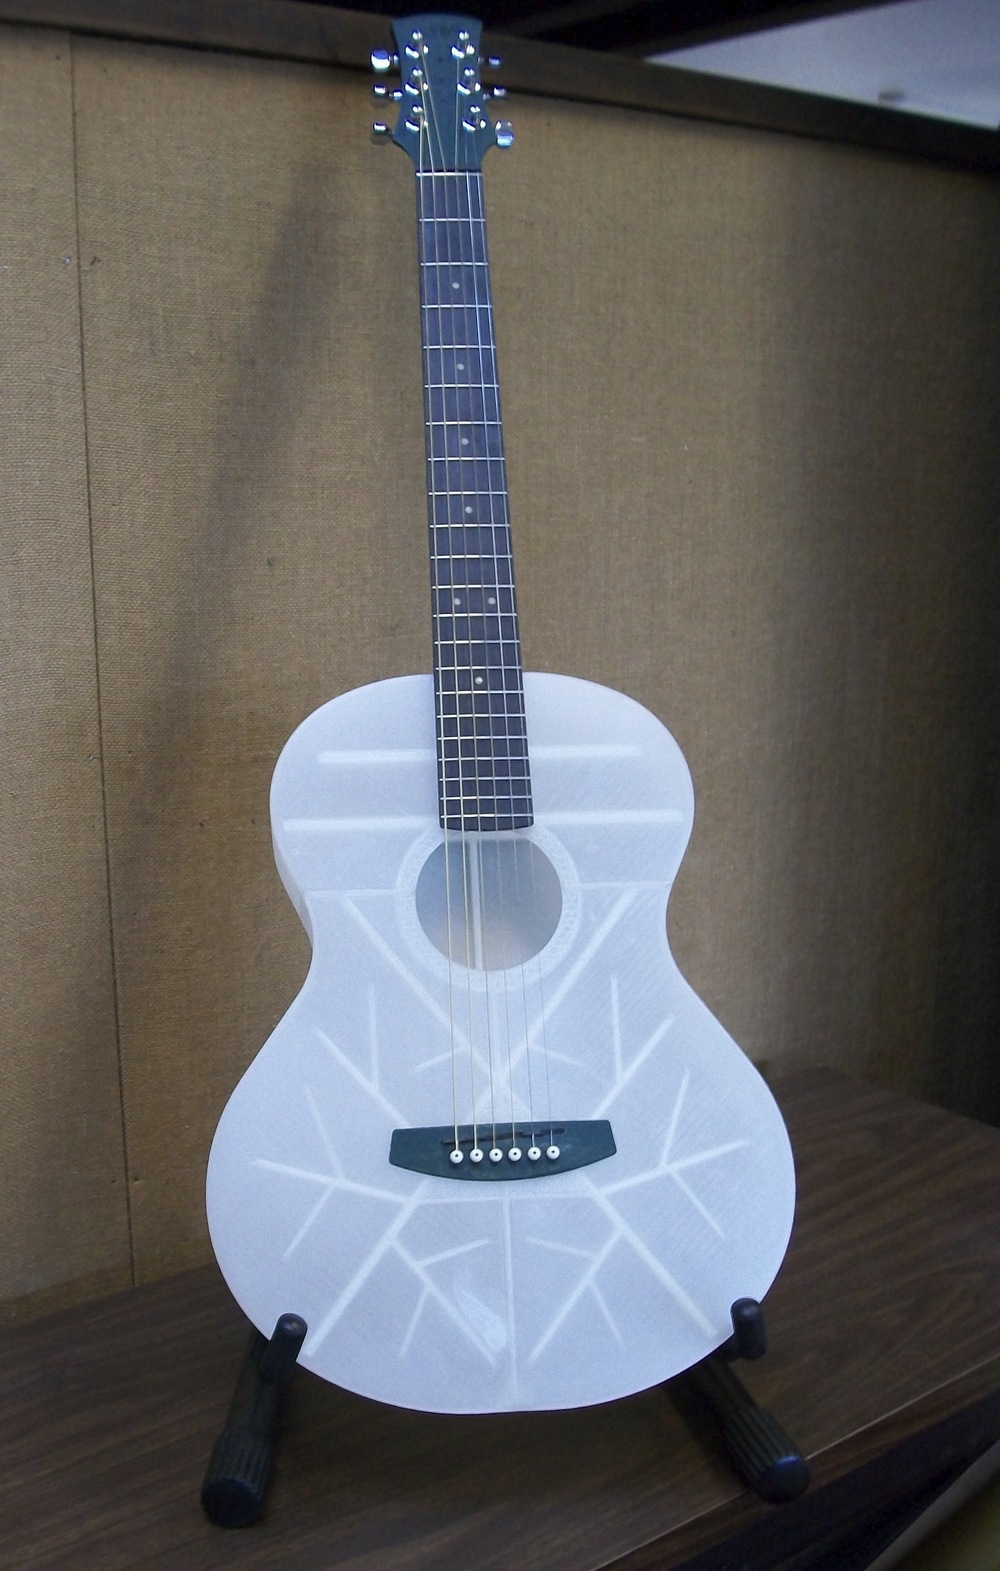 Гитара, полностью распечатанная на 3D-принтере - 2